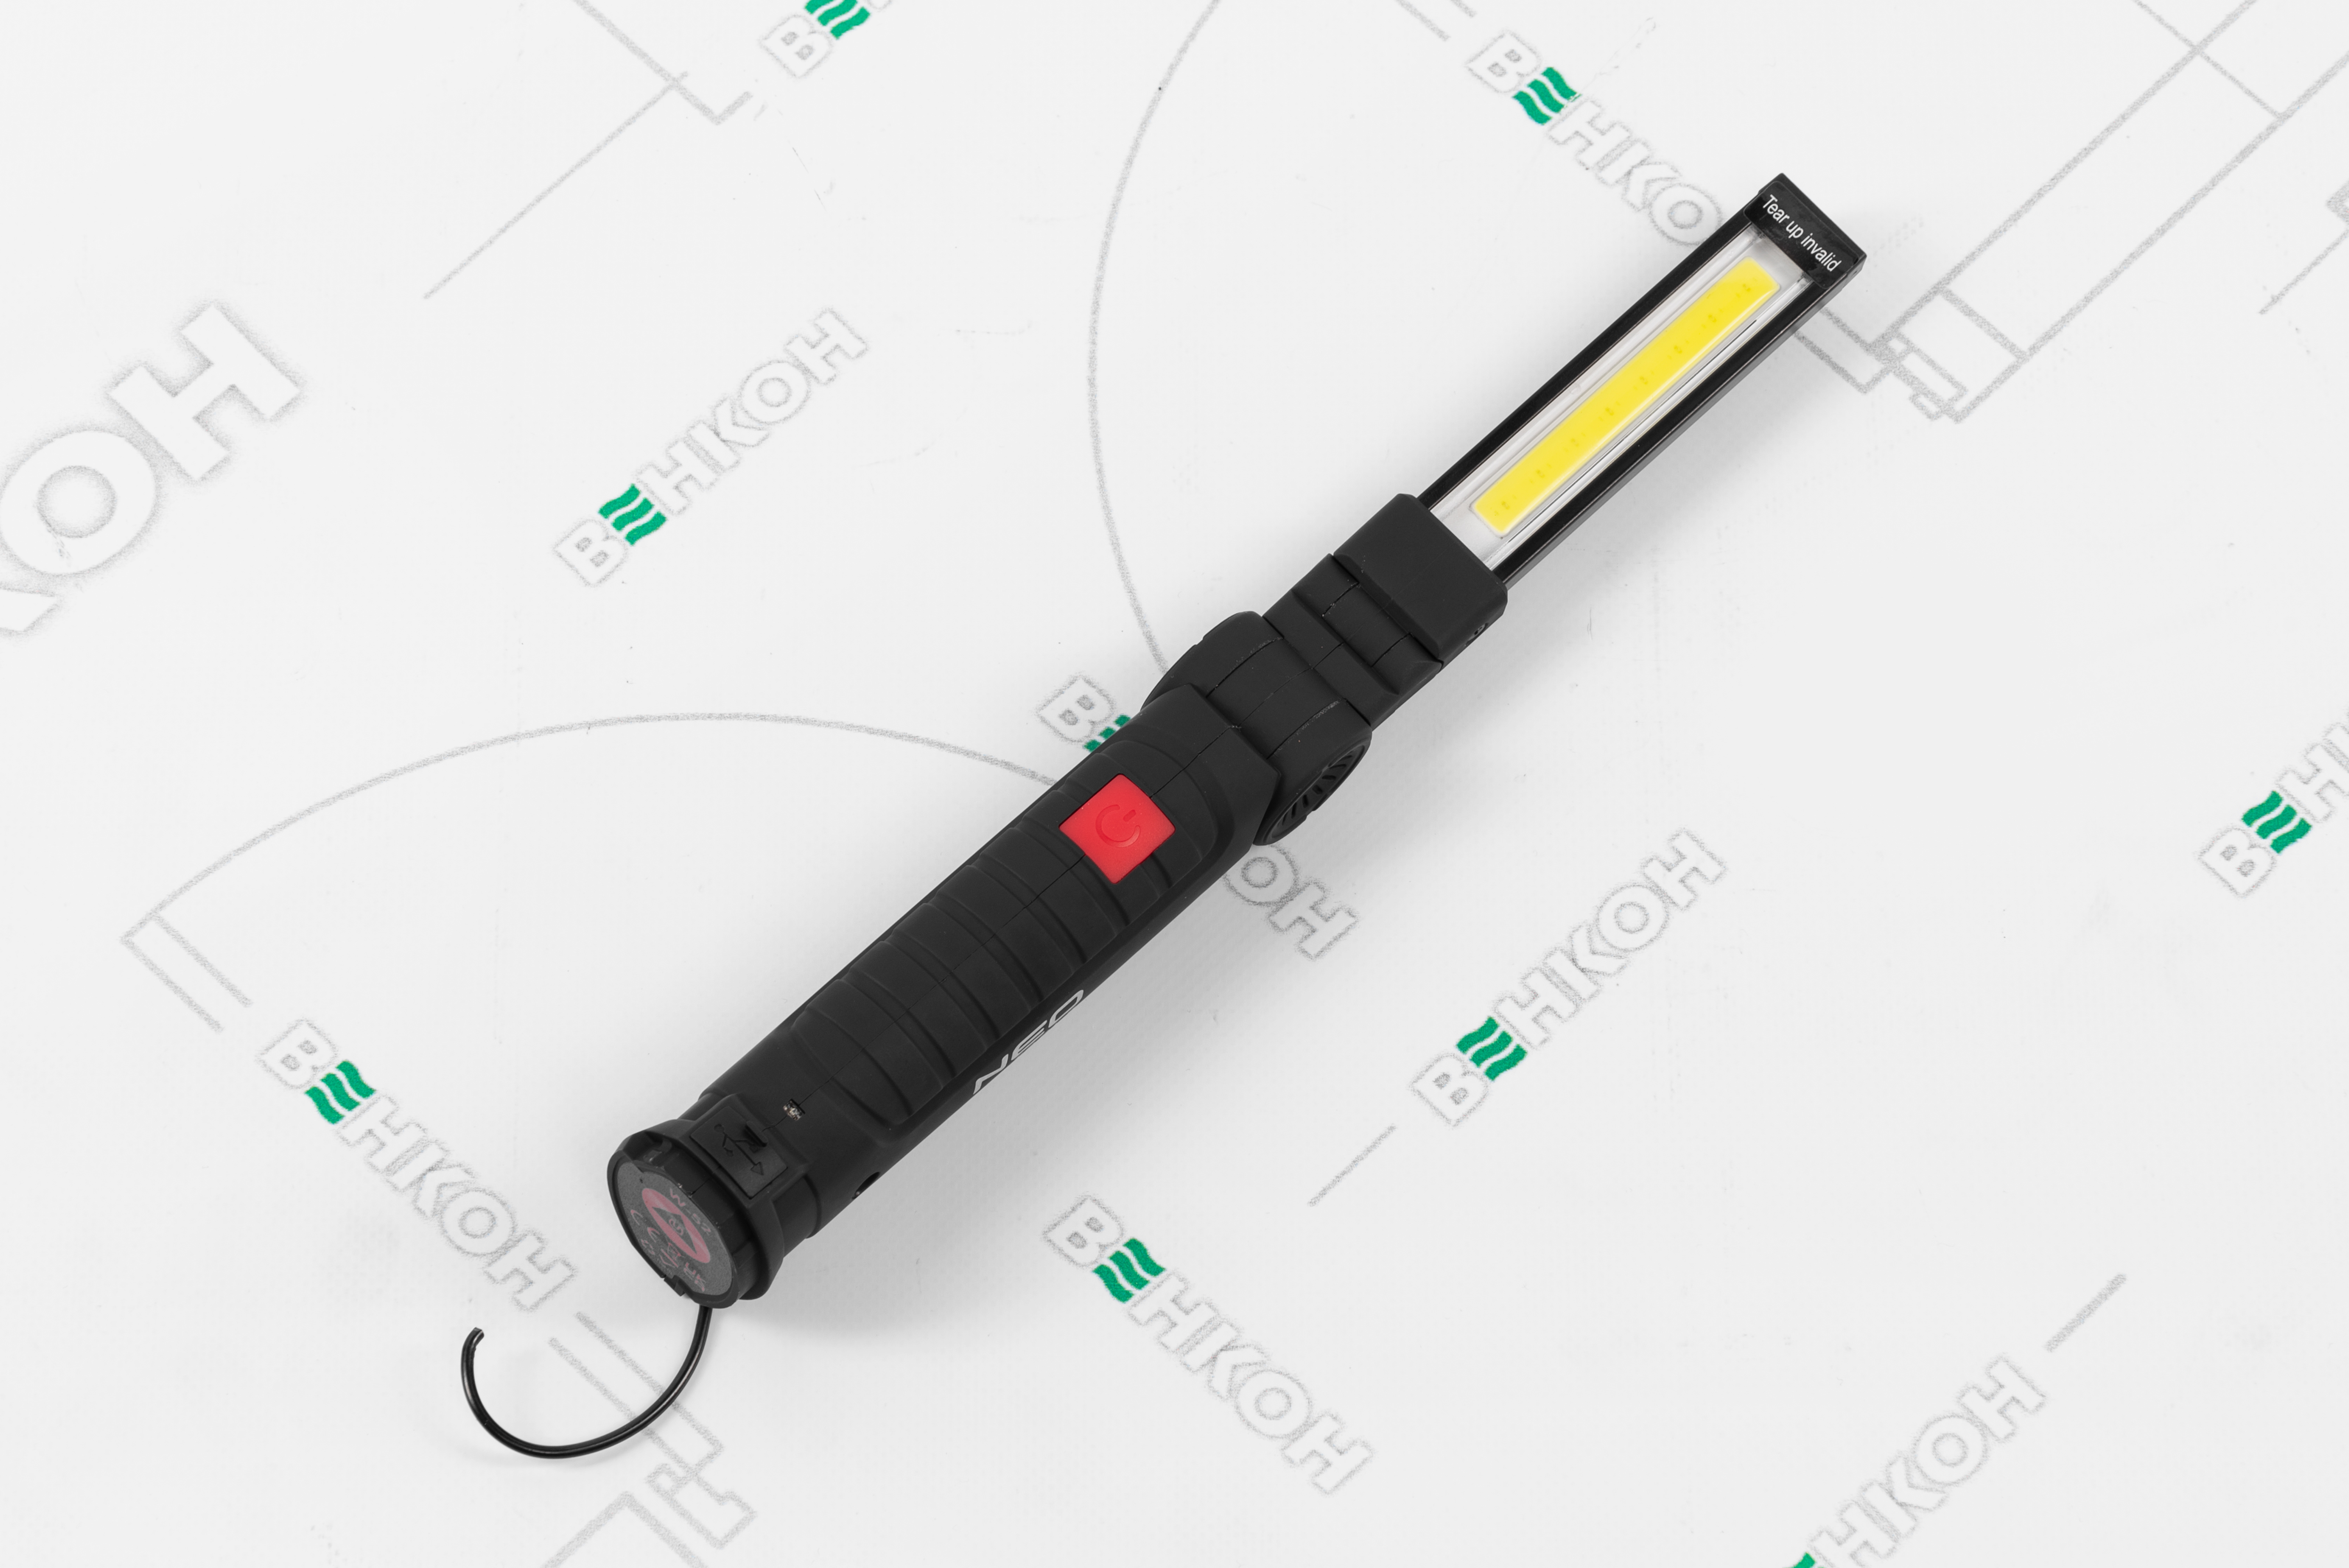 Інспекційний ліхтарик Neo Tools 99-041 характеристики - фотографія 7